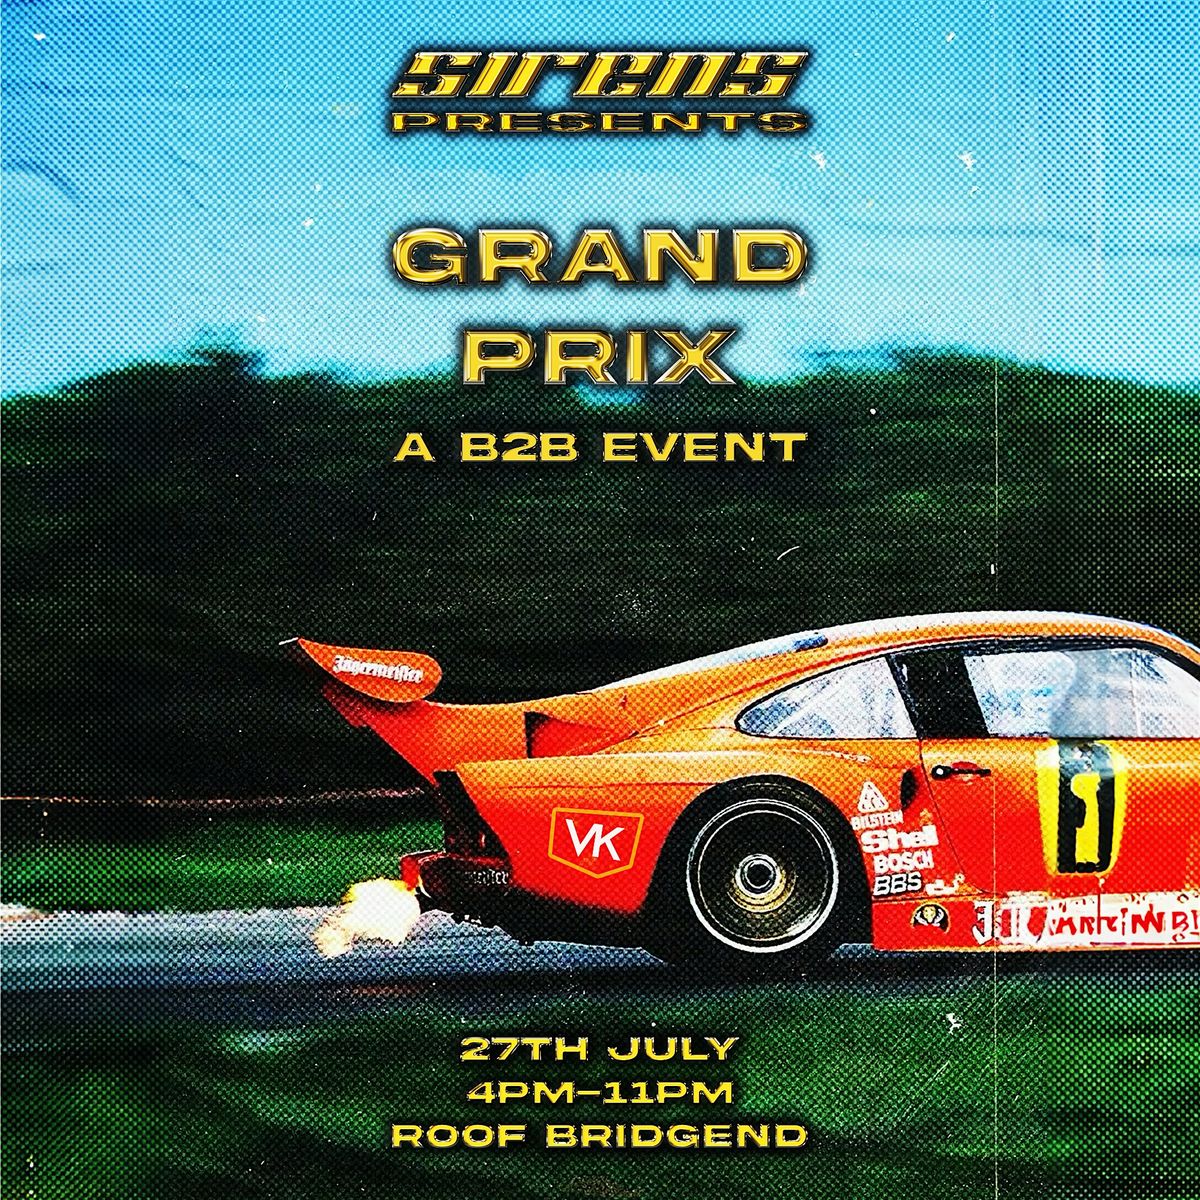 Sirens present : The Grand Prix